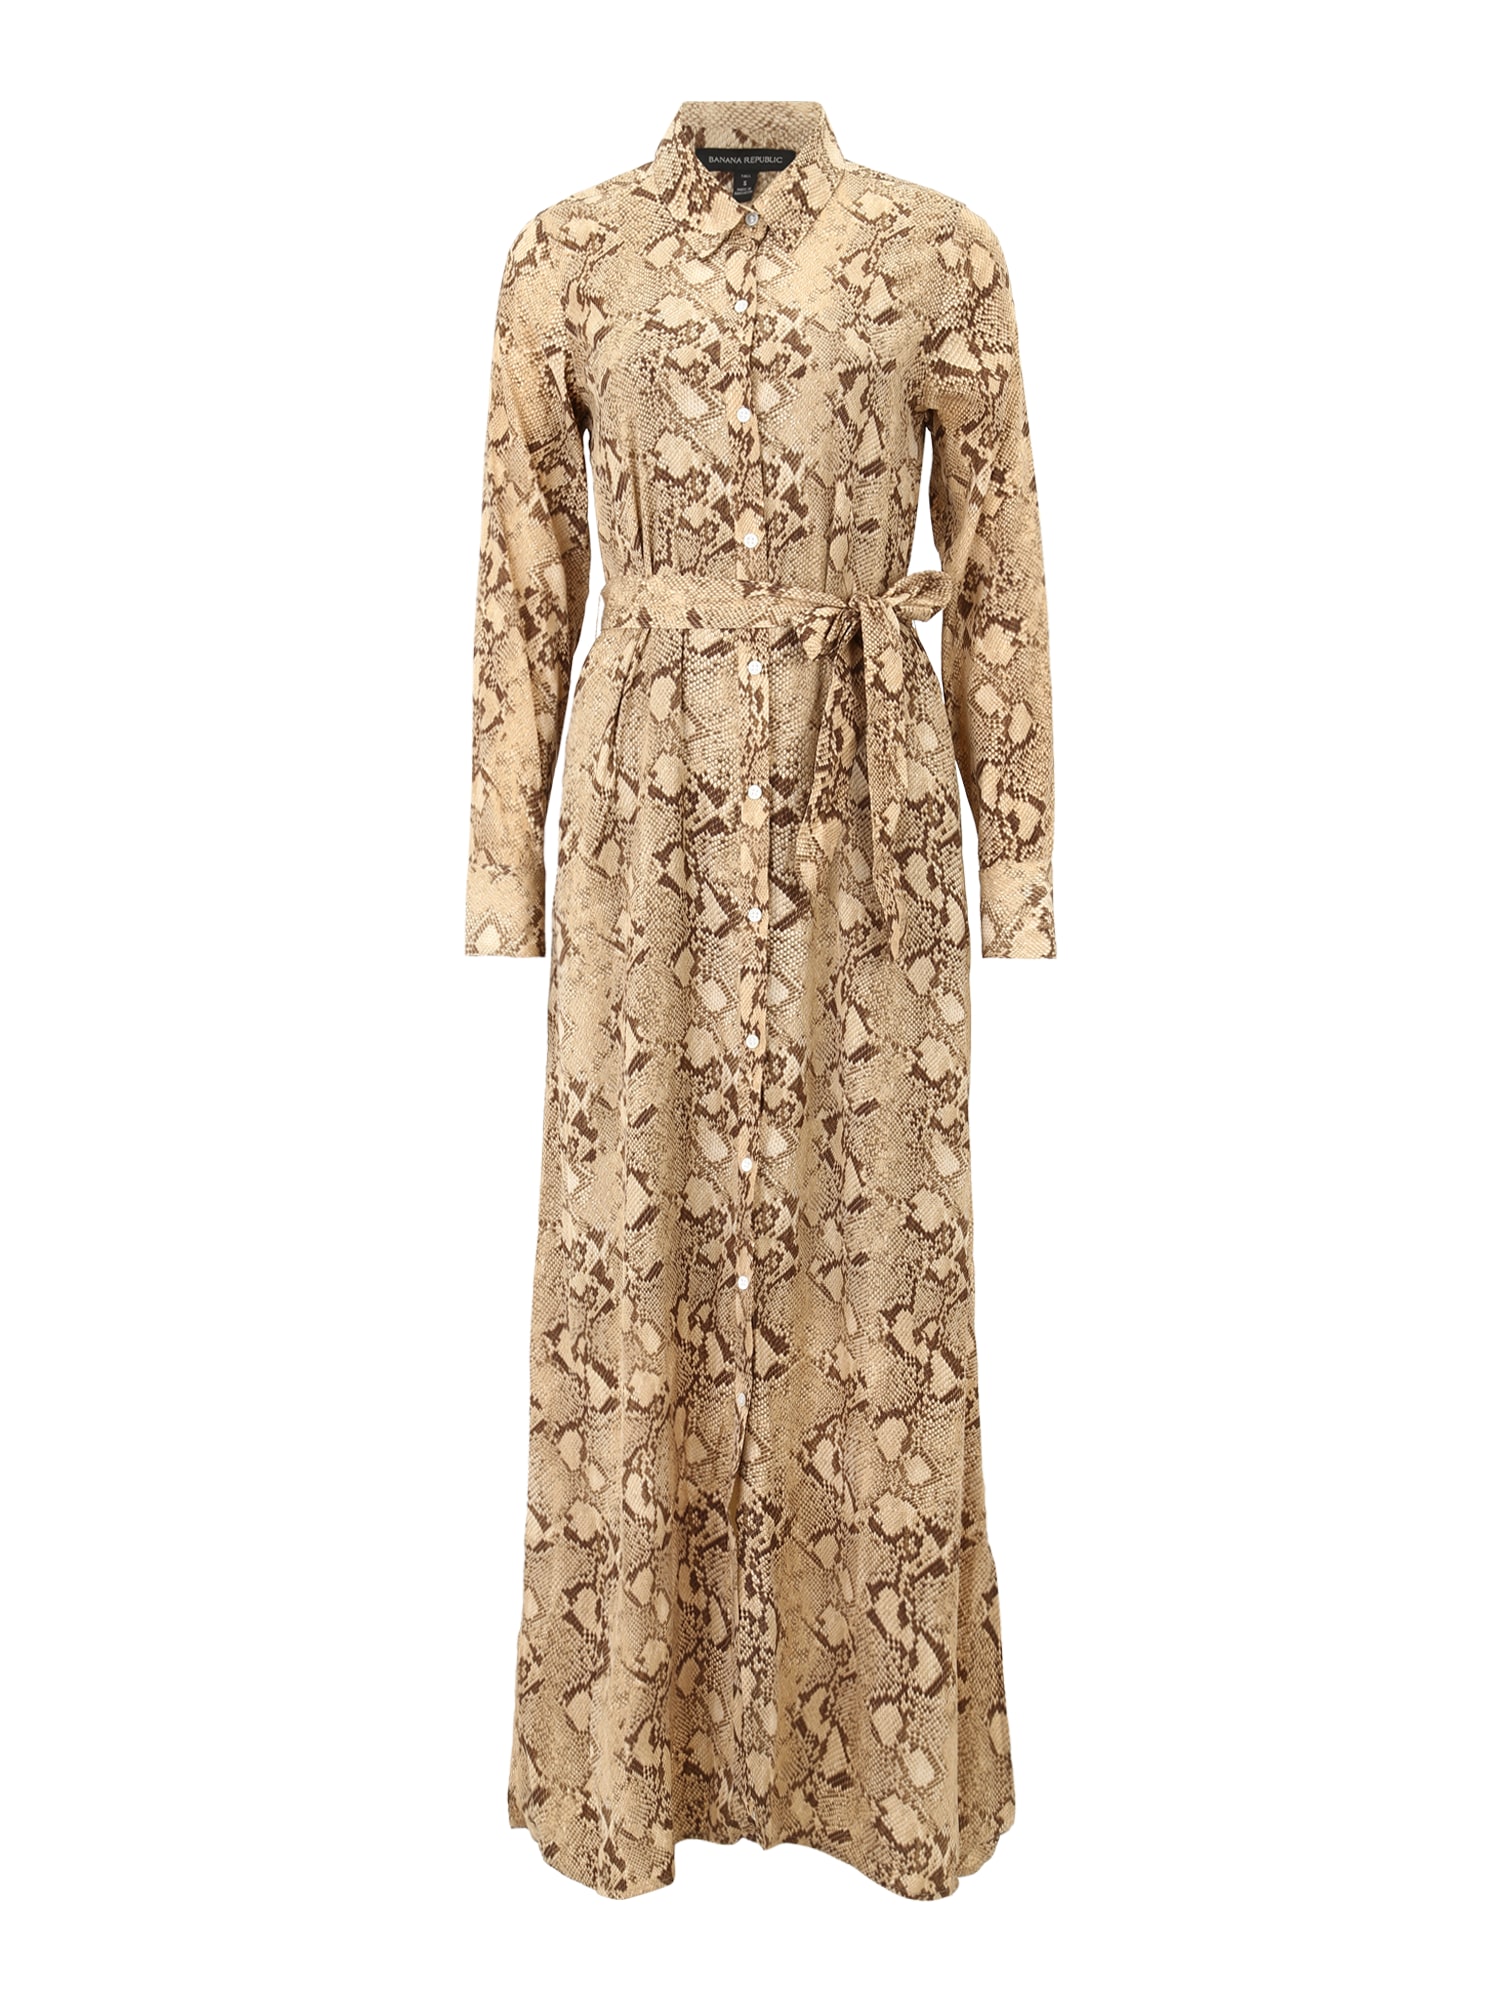 Banana Republic Tall Palaidinės tipo suknelė gelsvai pilka spalva / tamsiai ruda